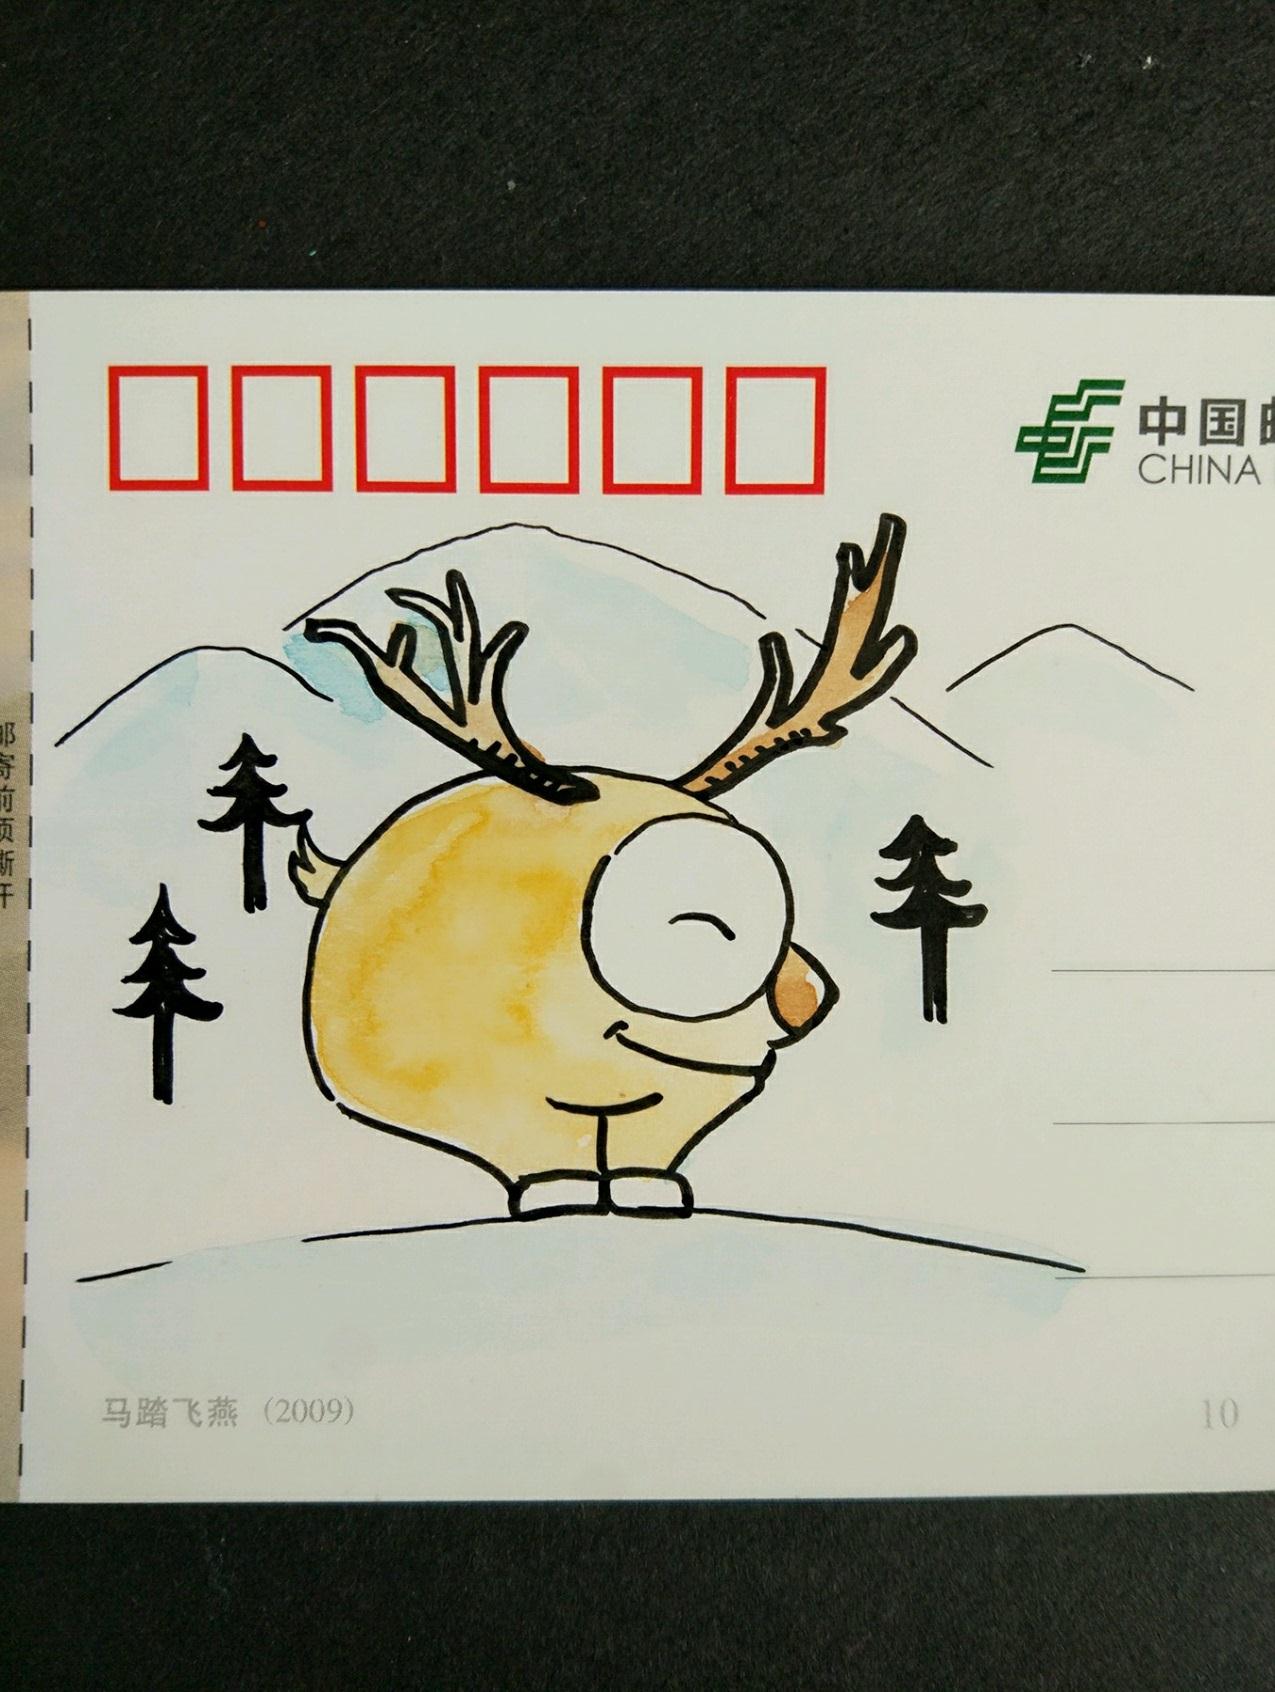  可爱的小鹿手绘明信片制作步骤 宋宋的优秀作品